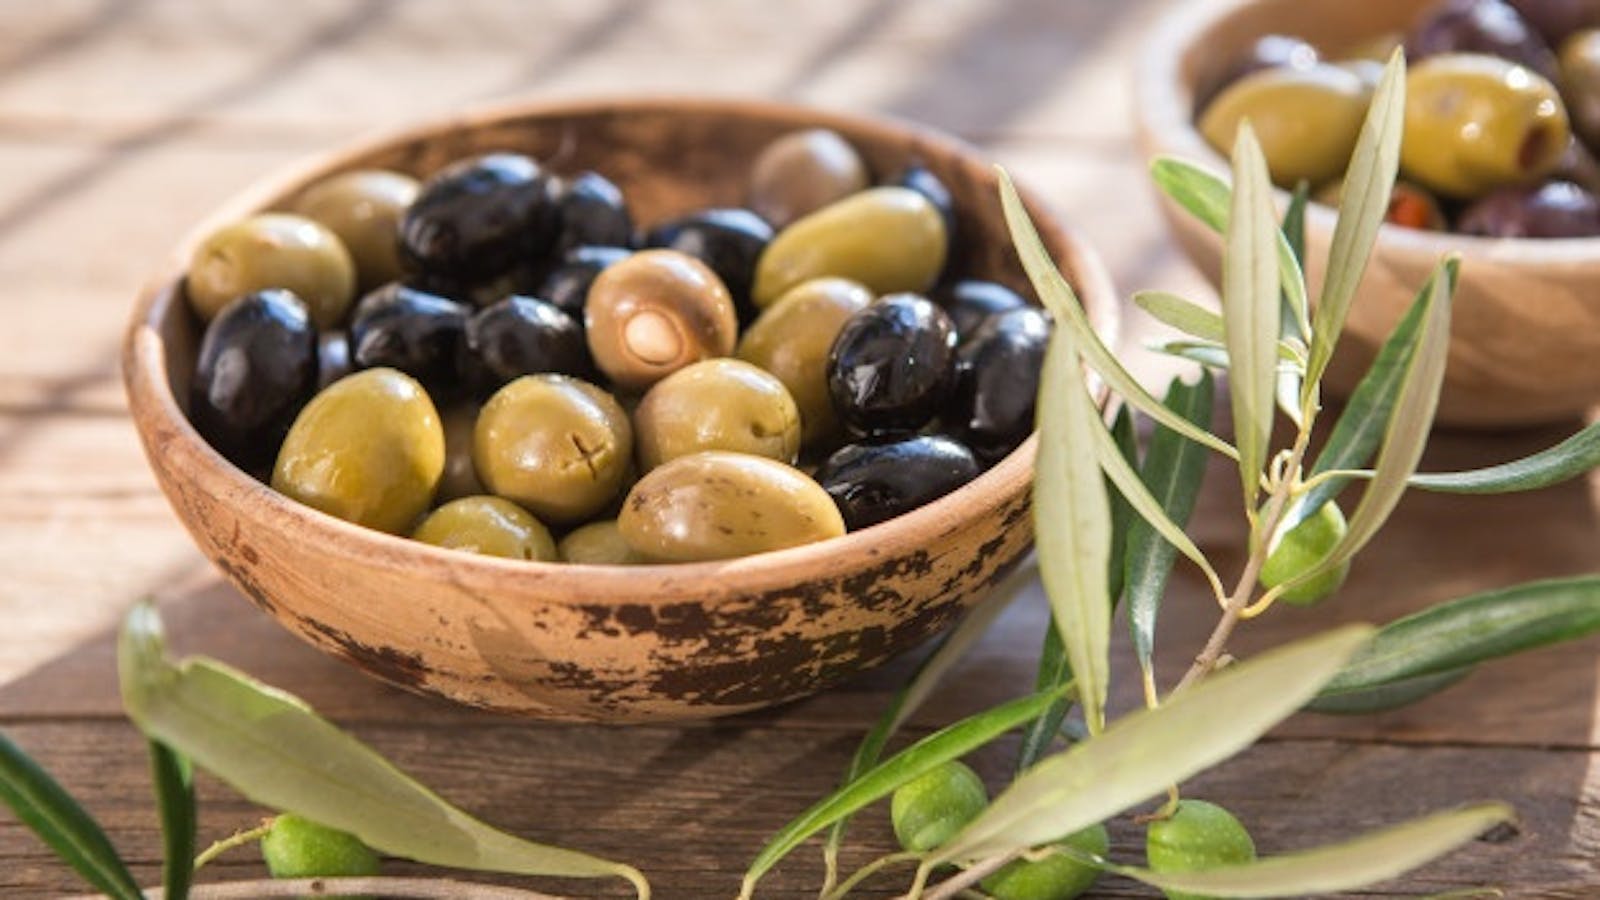 Kalamata Olives: Facts and benefits of Kalamata Olives